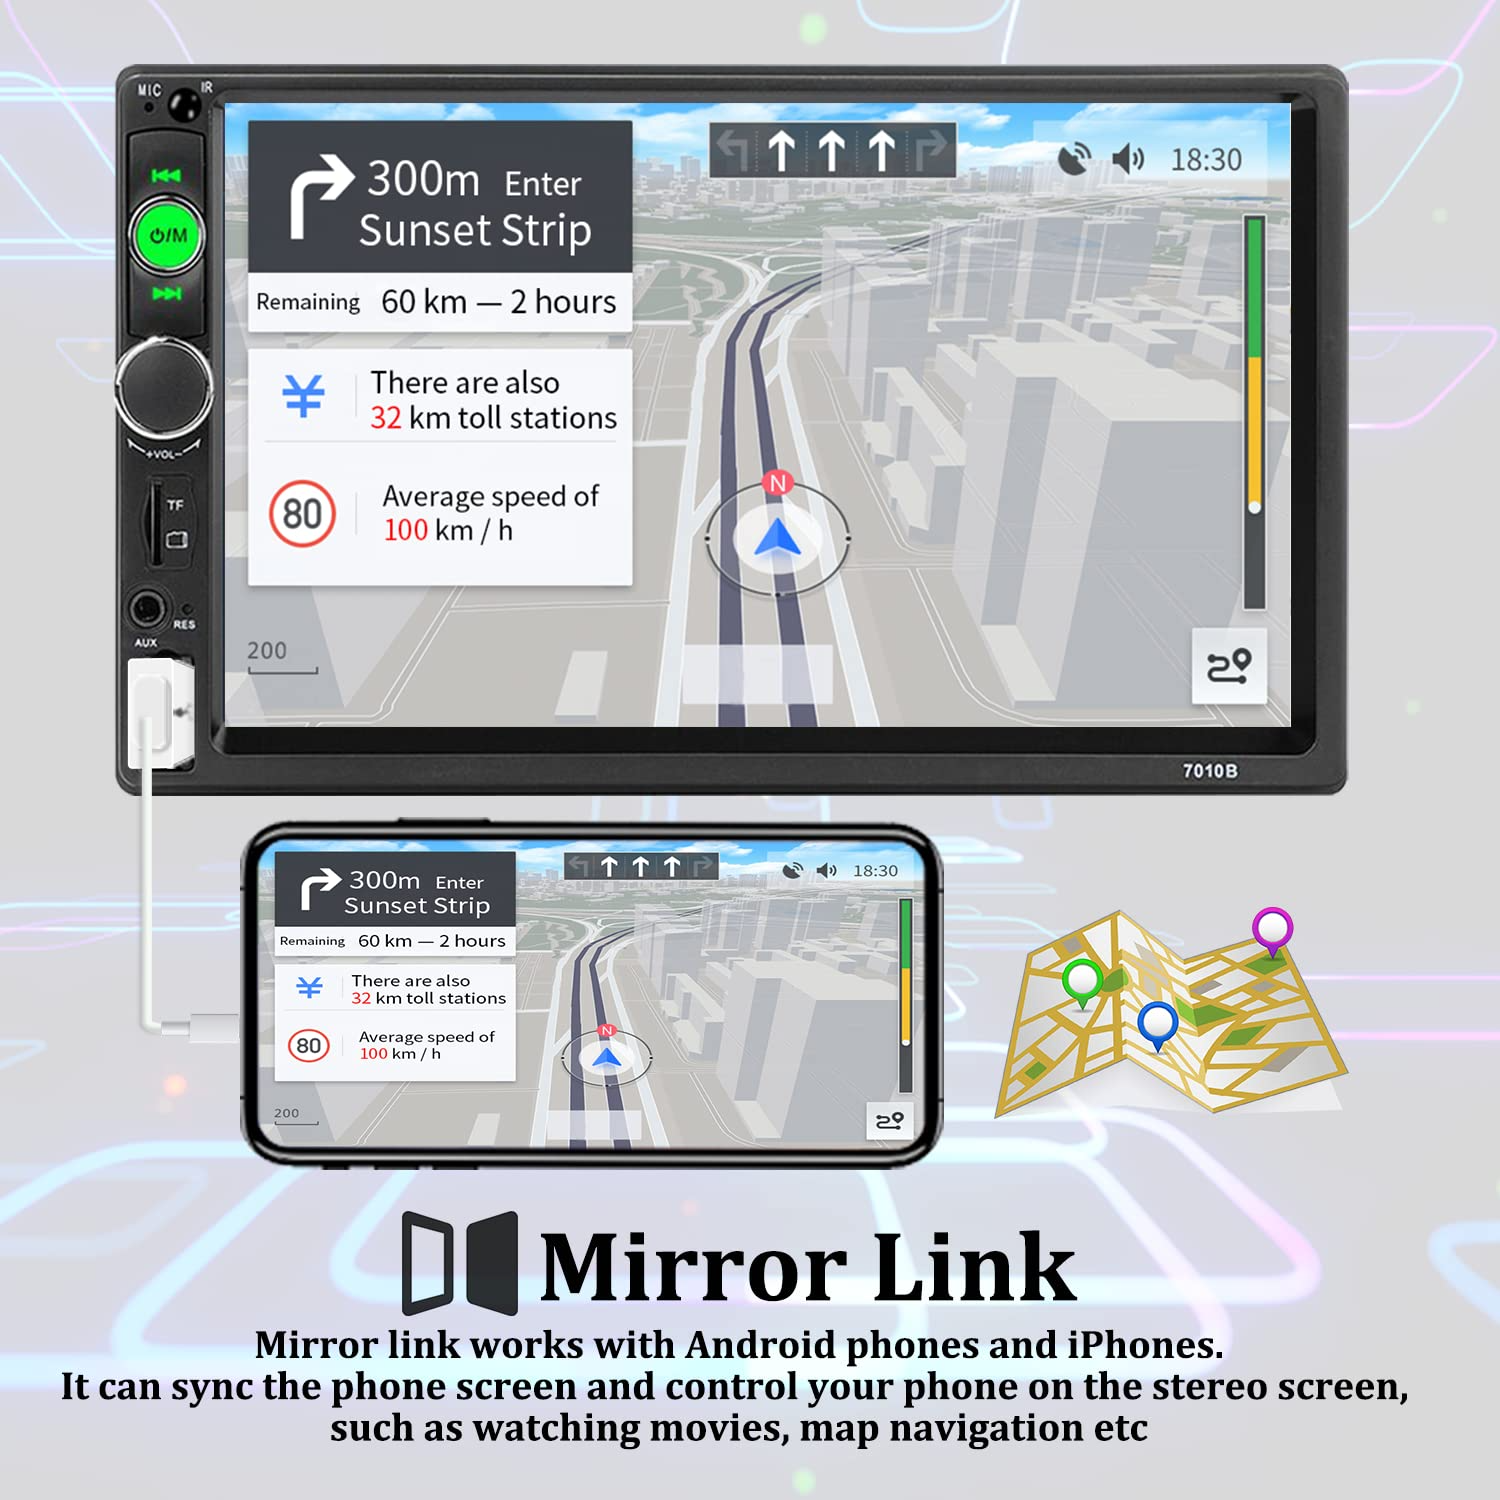 Acheter Lecteur CD de voiture boîtier stéréo externe lecteur DVD pour  autoradio avec Interface USB lecteur Android Ultra rapide accessoires de  voiture